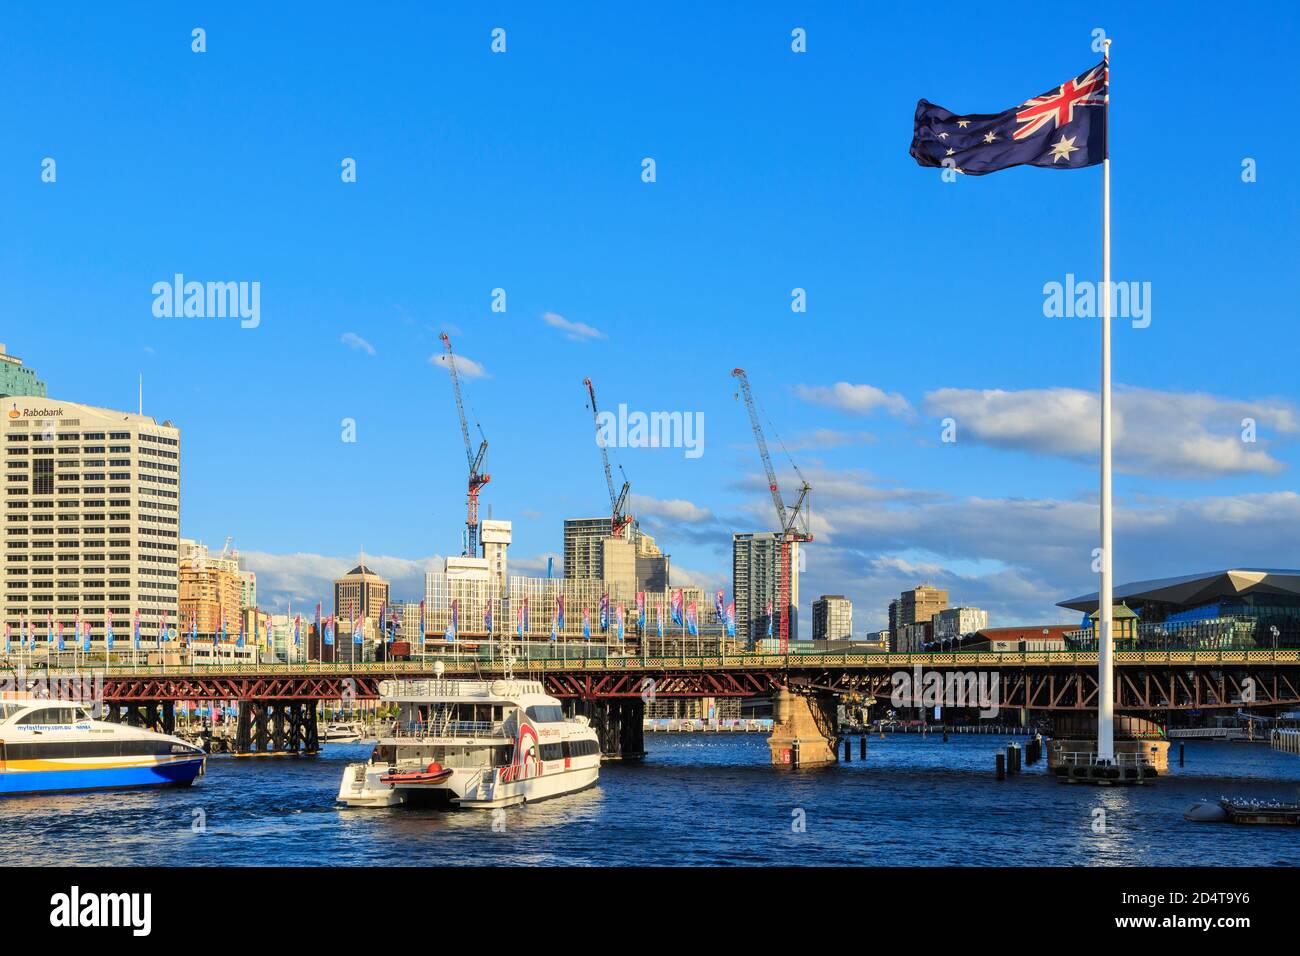 Un drapeau australien géant vole à côté du pont historique Pyrmont à Darling Harbour, Sydney, Australie Banque D'Images